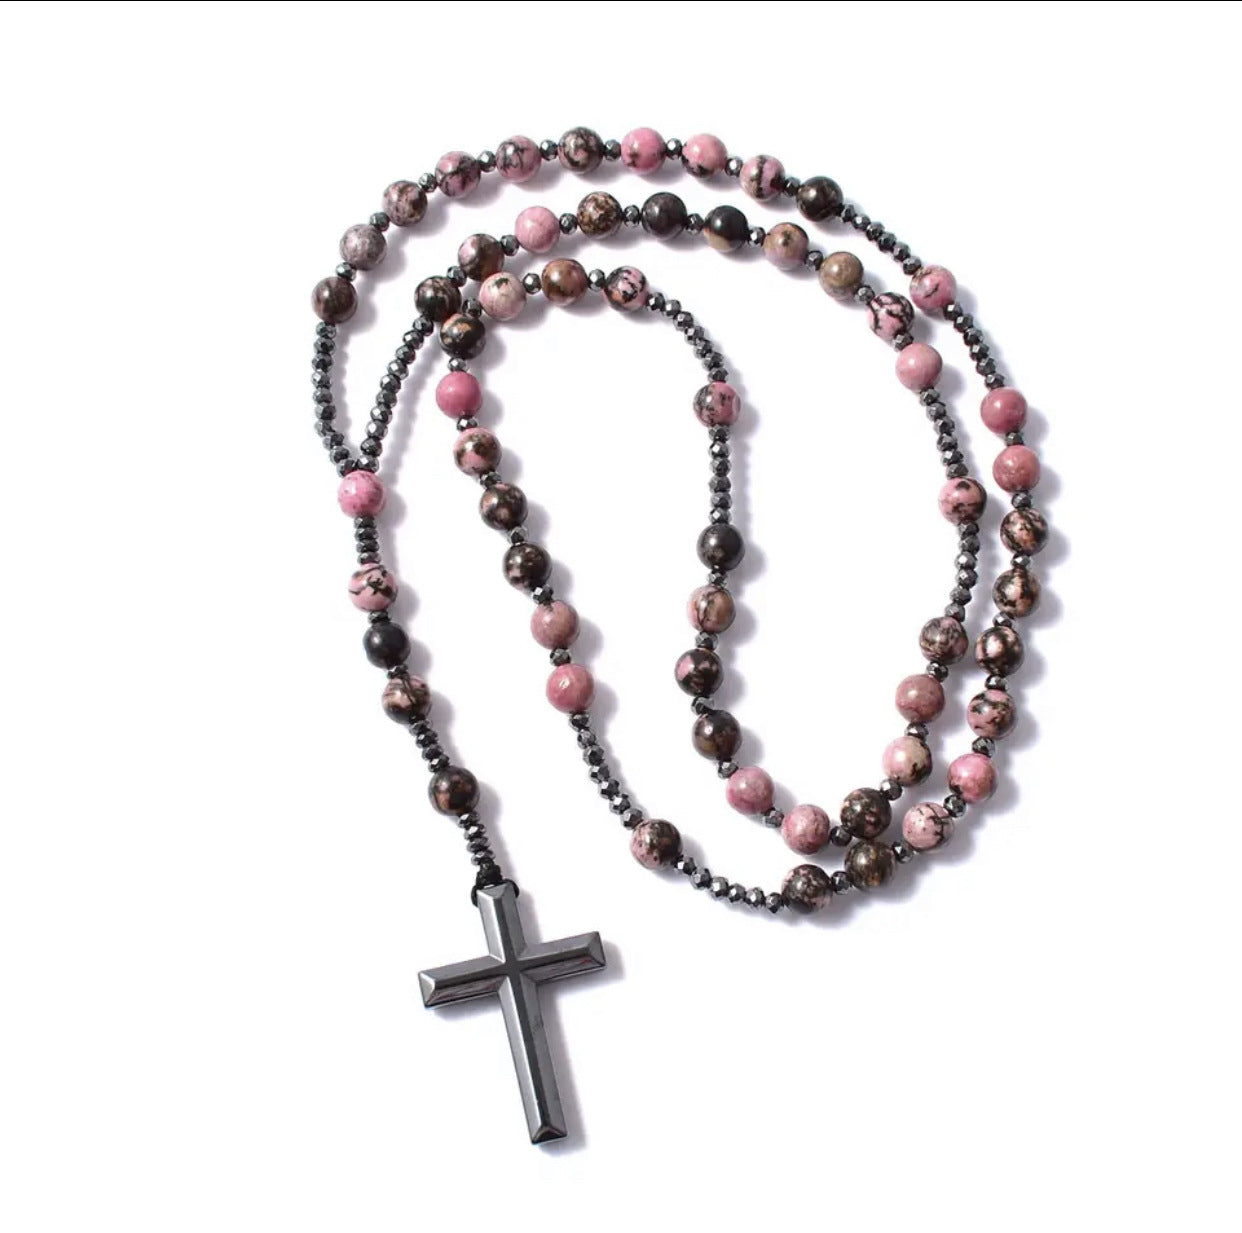 Cross Catholic Stone Rosary Necklace